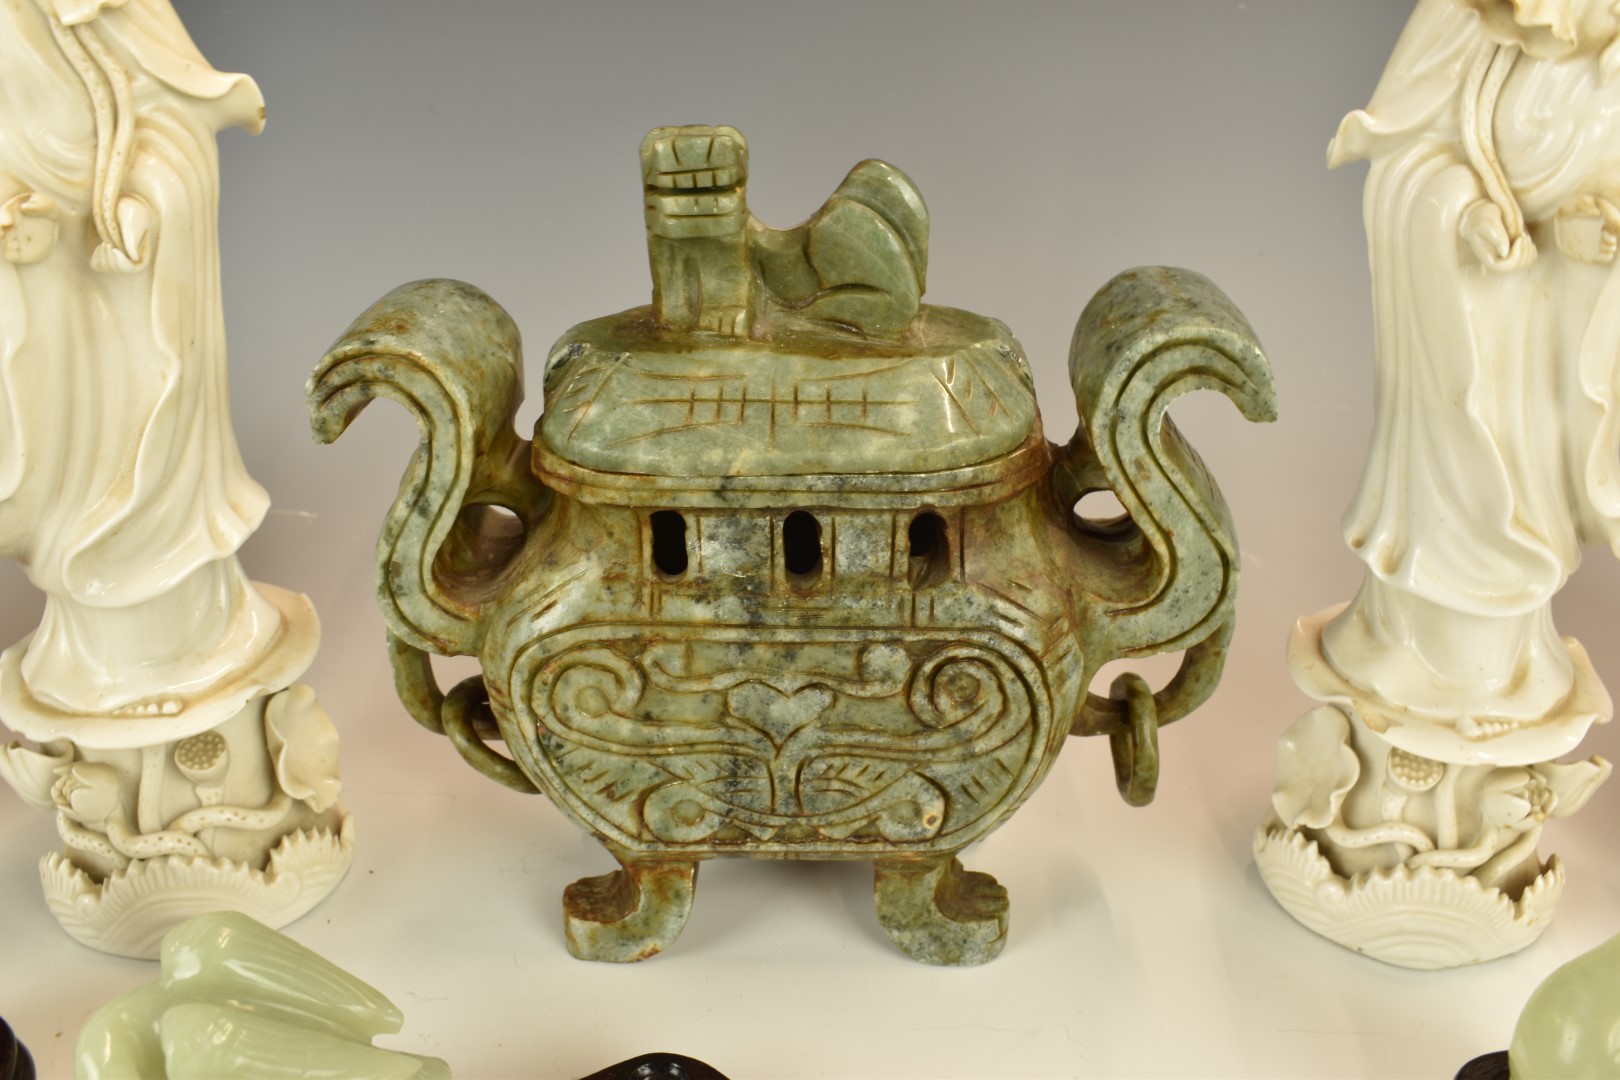 Collection of Chinese ceramics, jadeite / jade, blanc de chine etc, tallest 27cm - Image 3 of 4